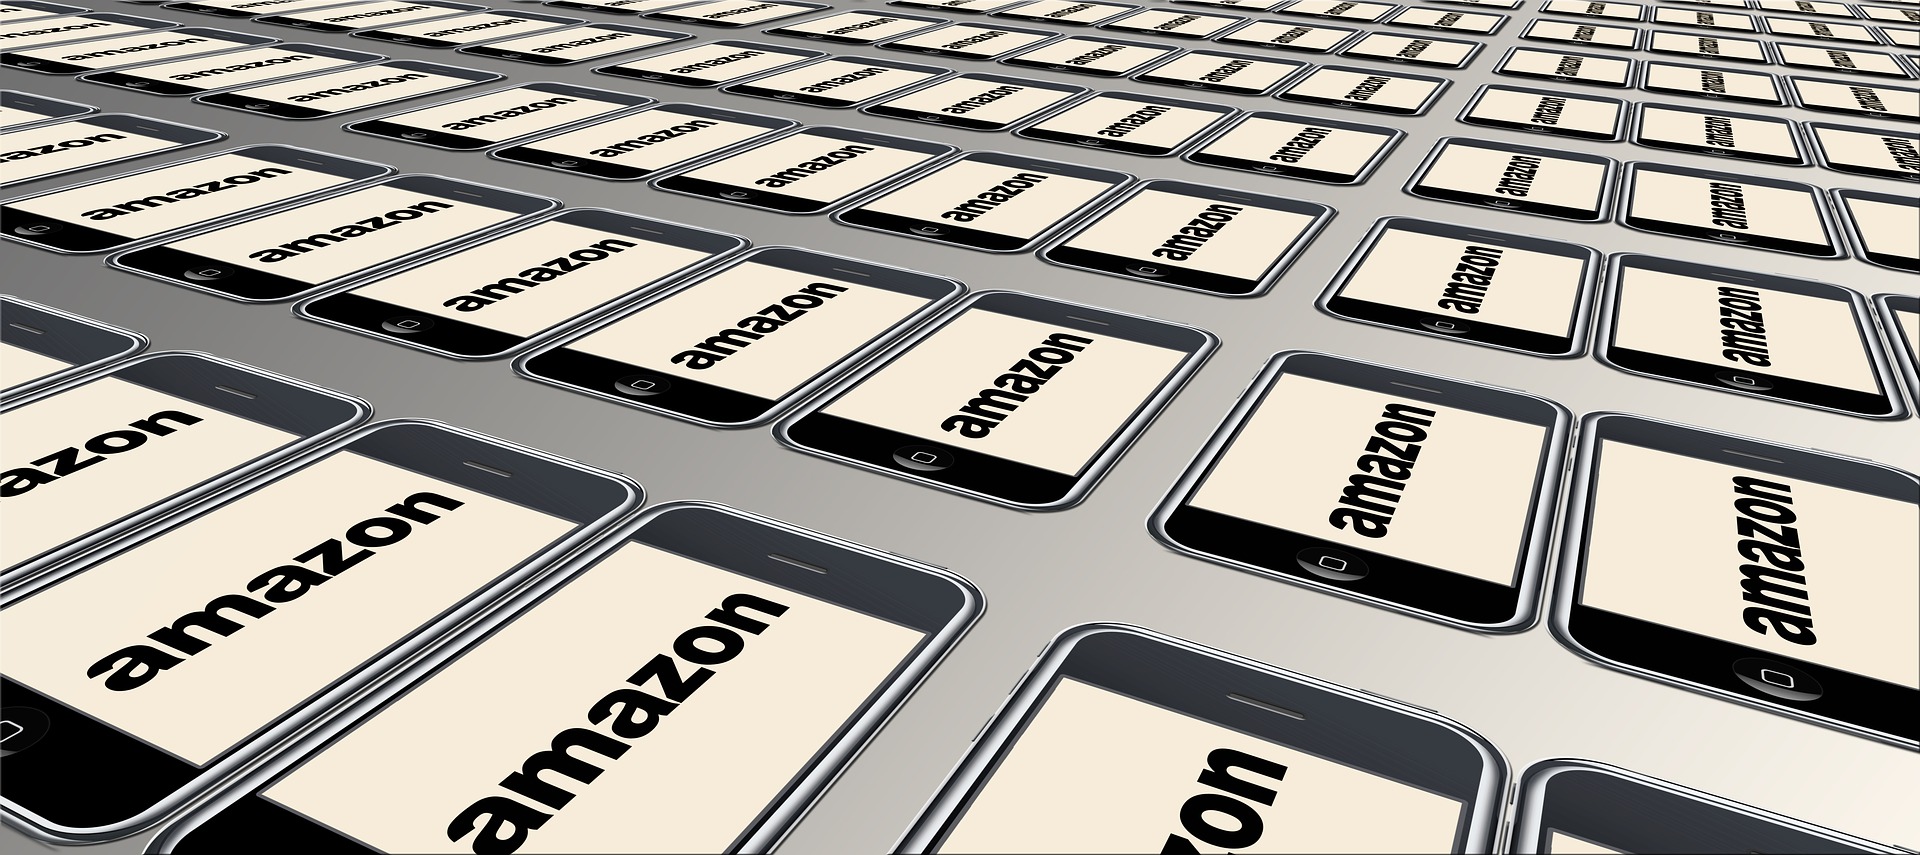 Amazon accusée de détruire des millions de produits neufs invendus